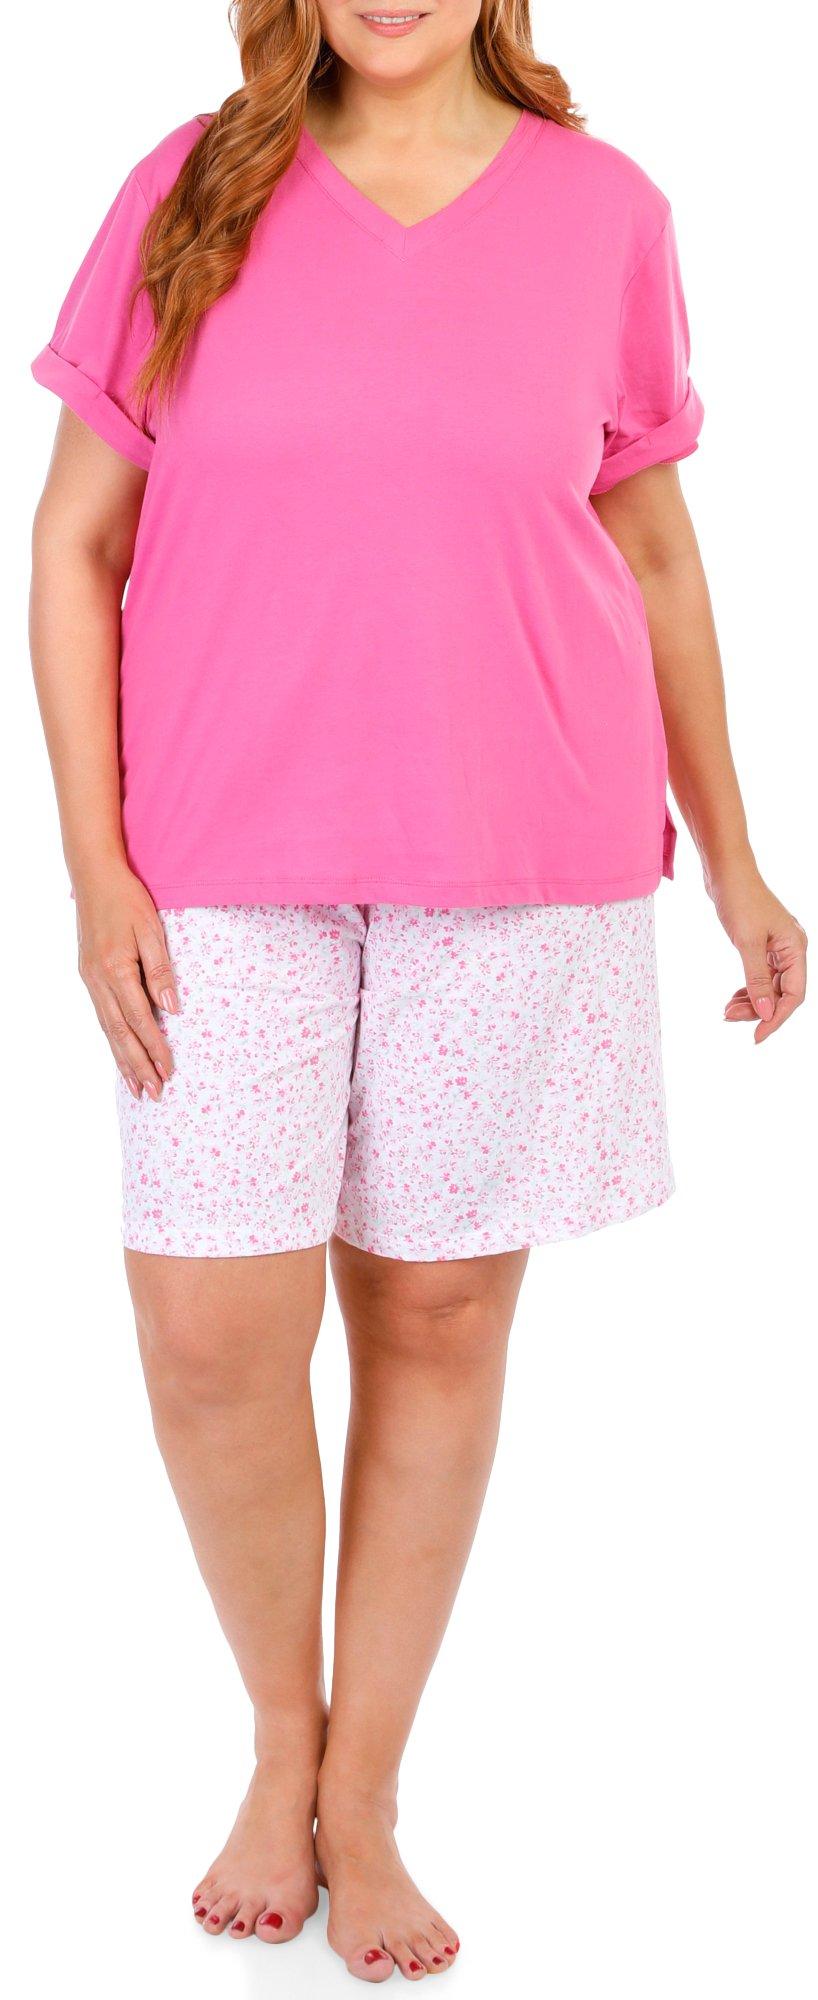 Women's Plus 2 Pc Sleepwear Shorts Set